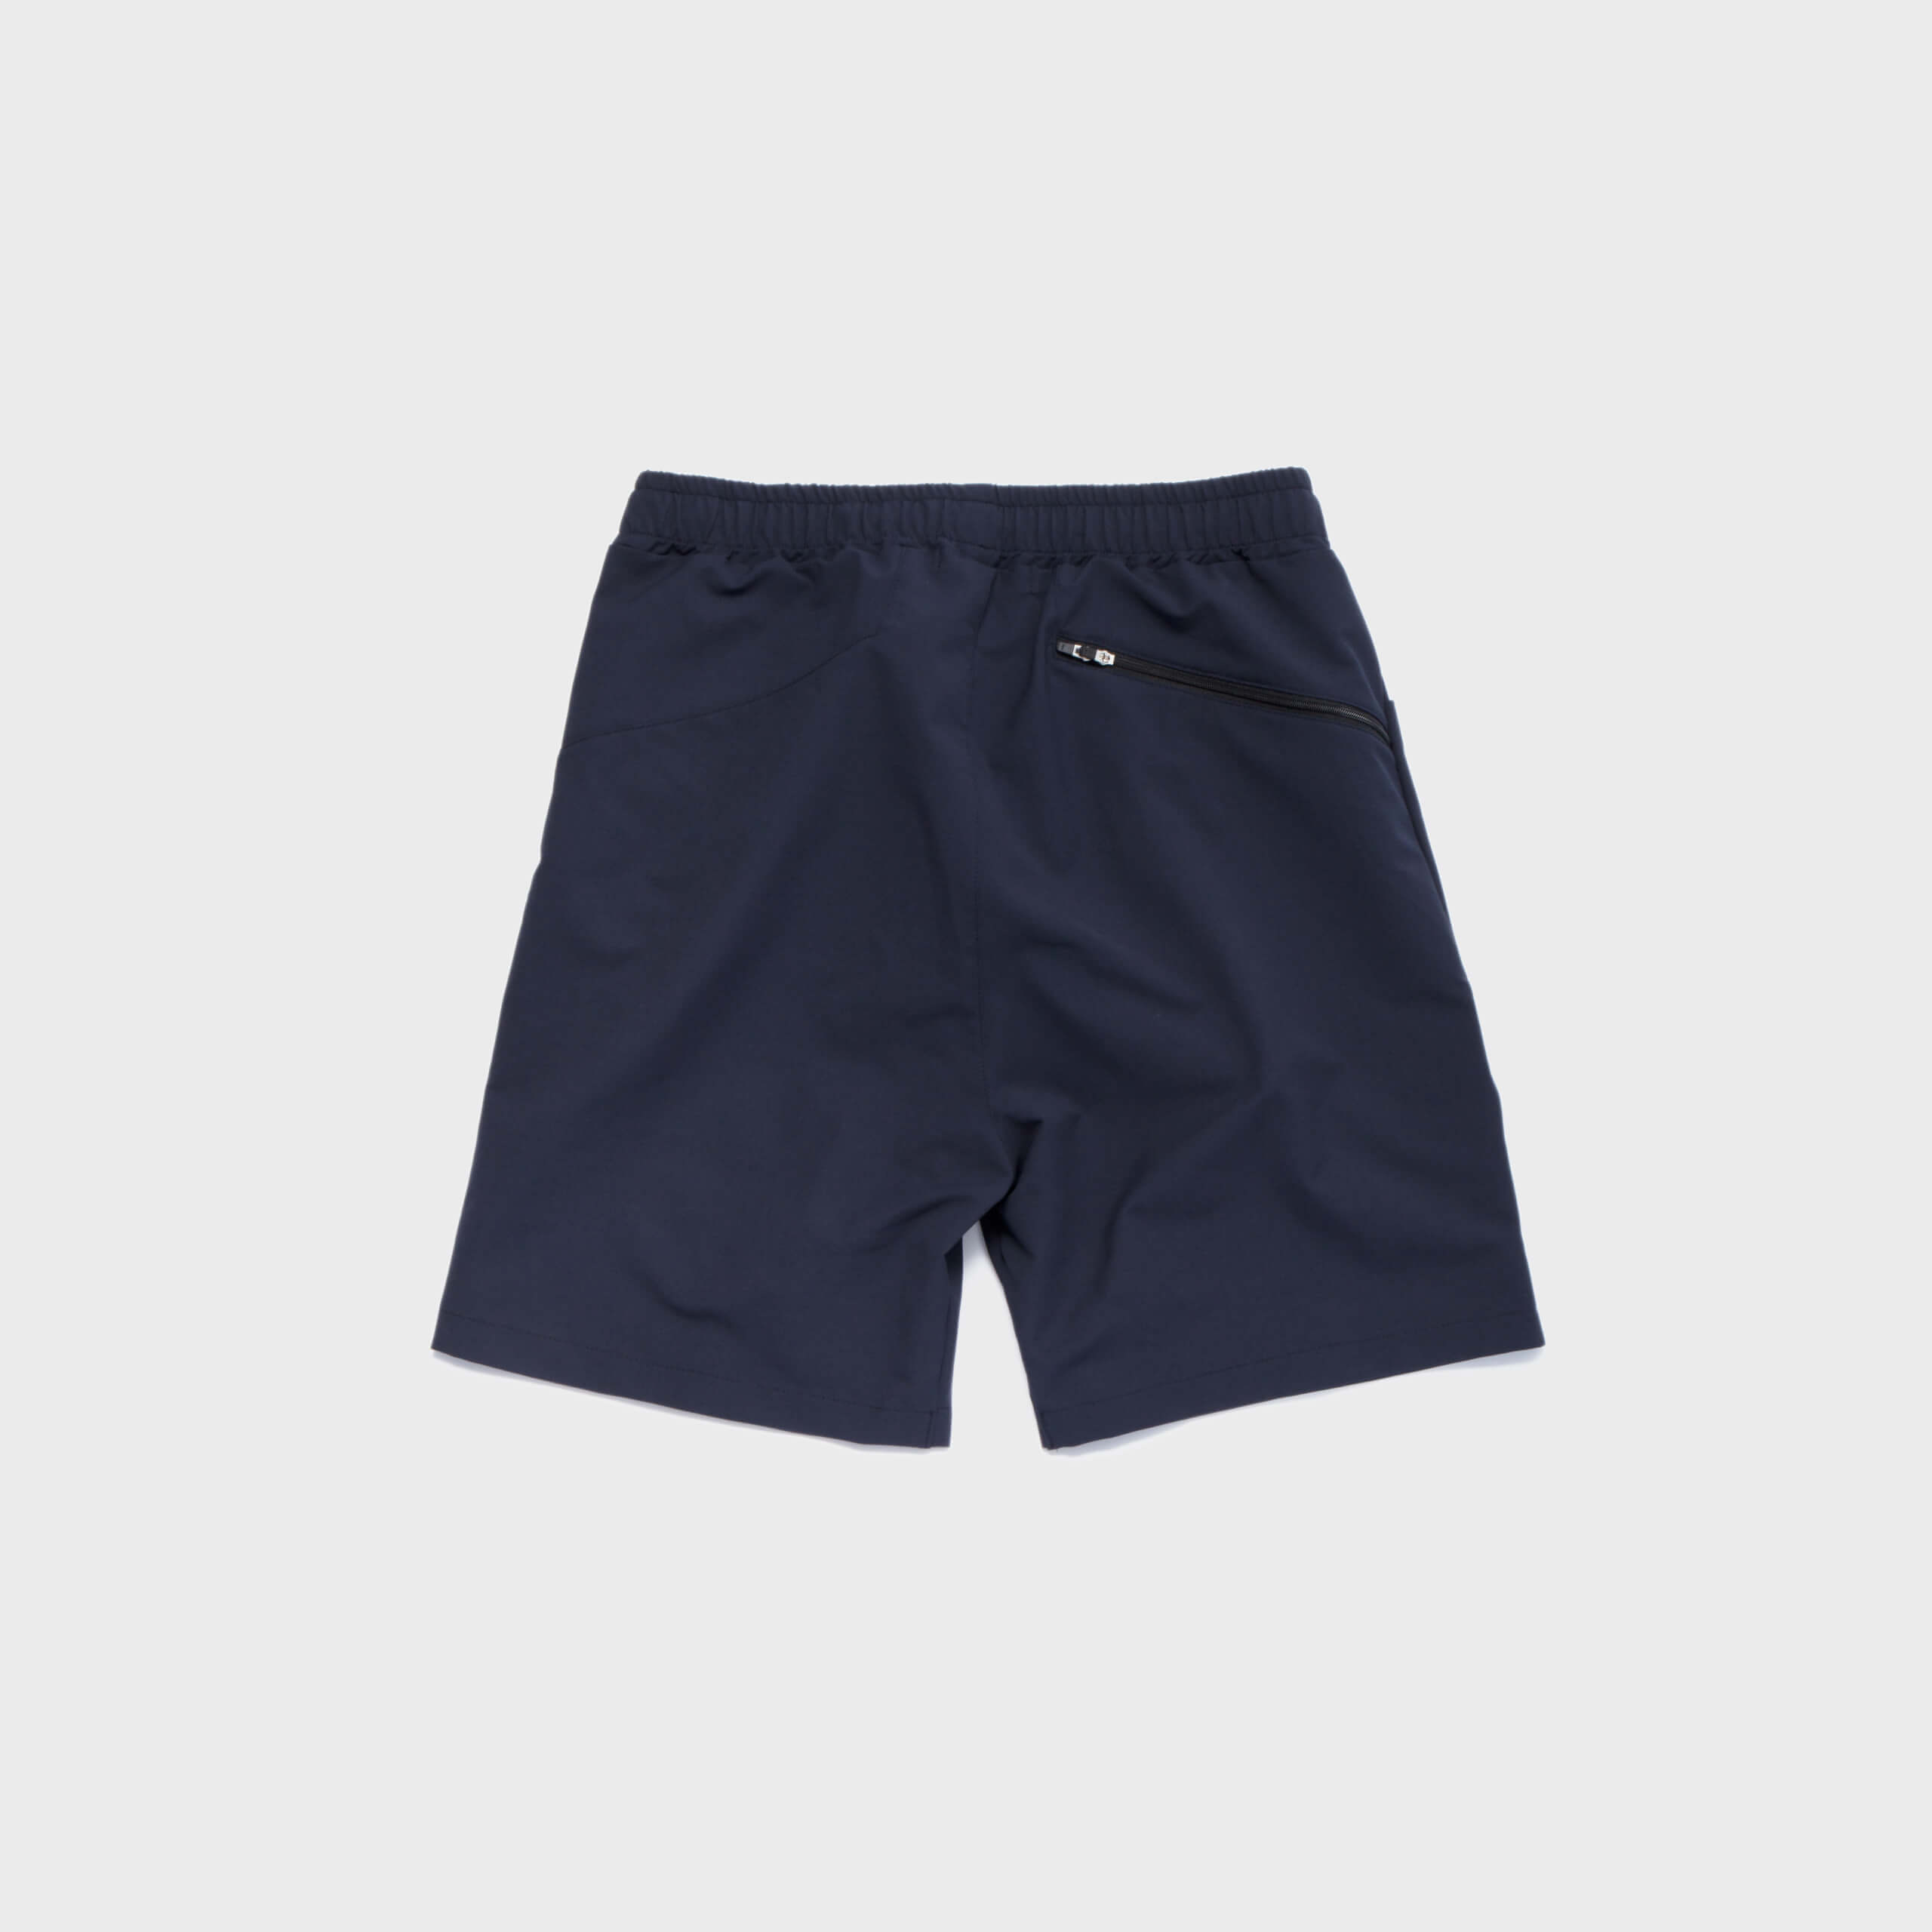 movit-fit-stretch-pocket-shorts-navy_p1